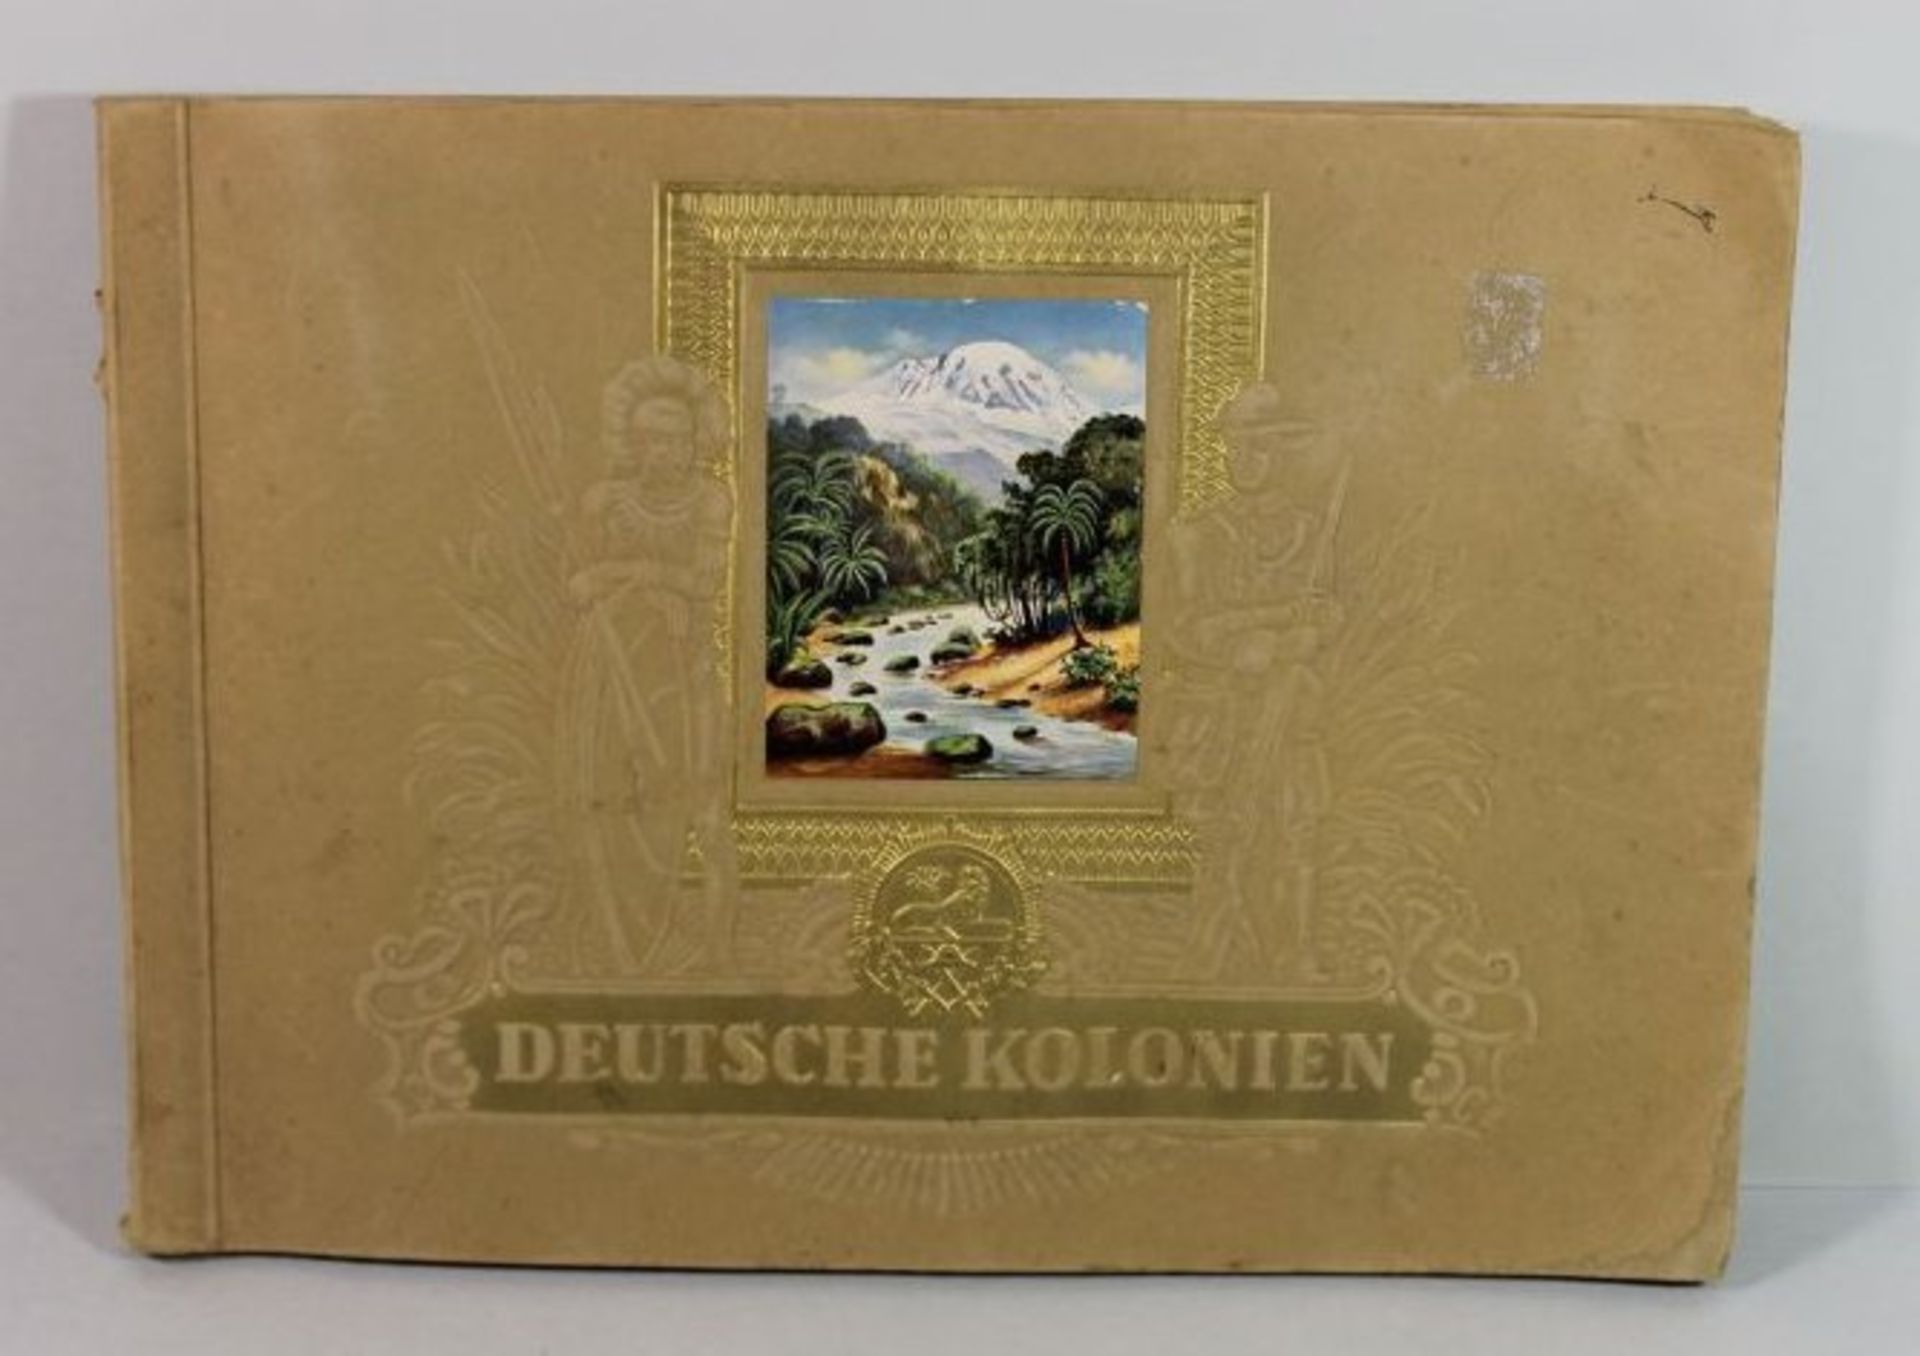 Sammelalbum "Deutsche Kolonien", komplett.